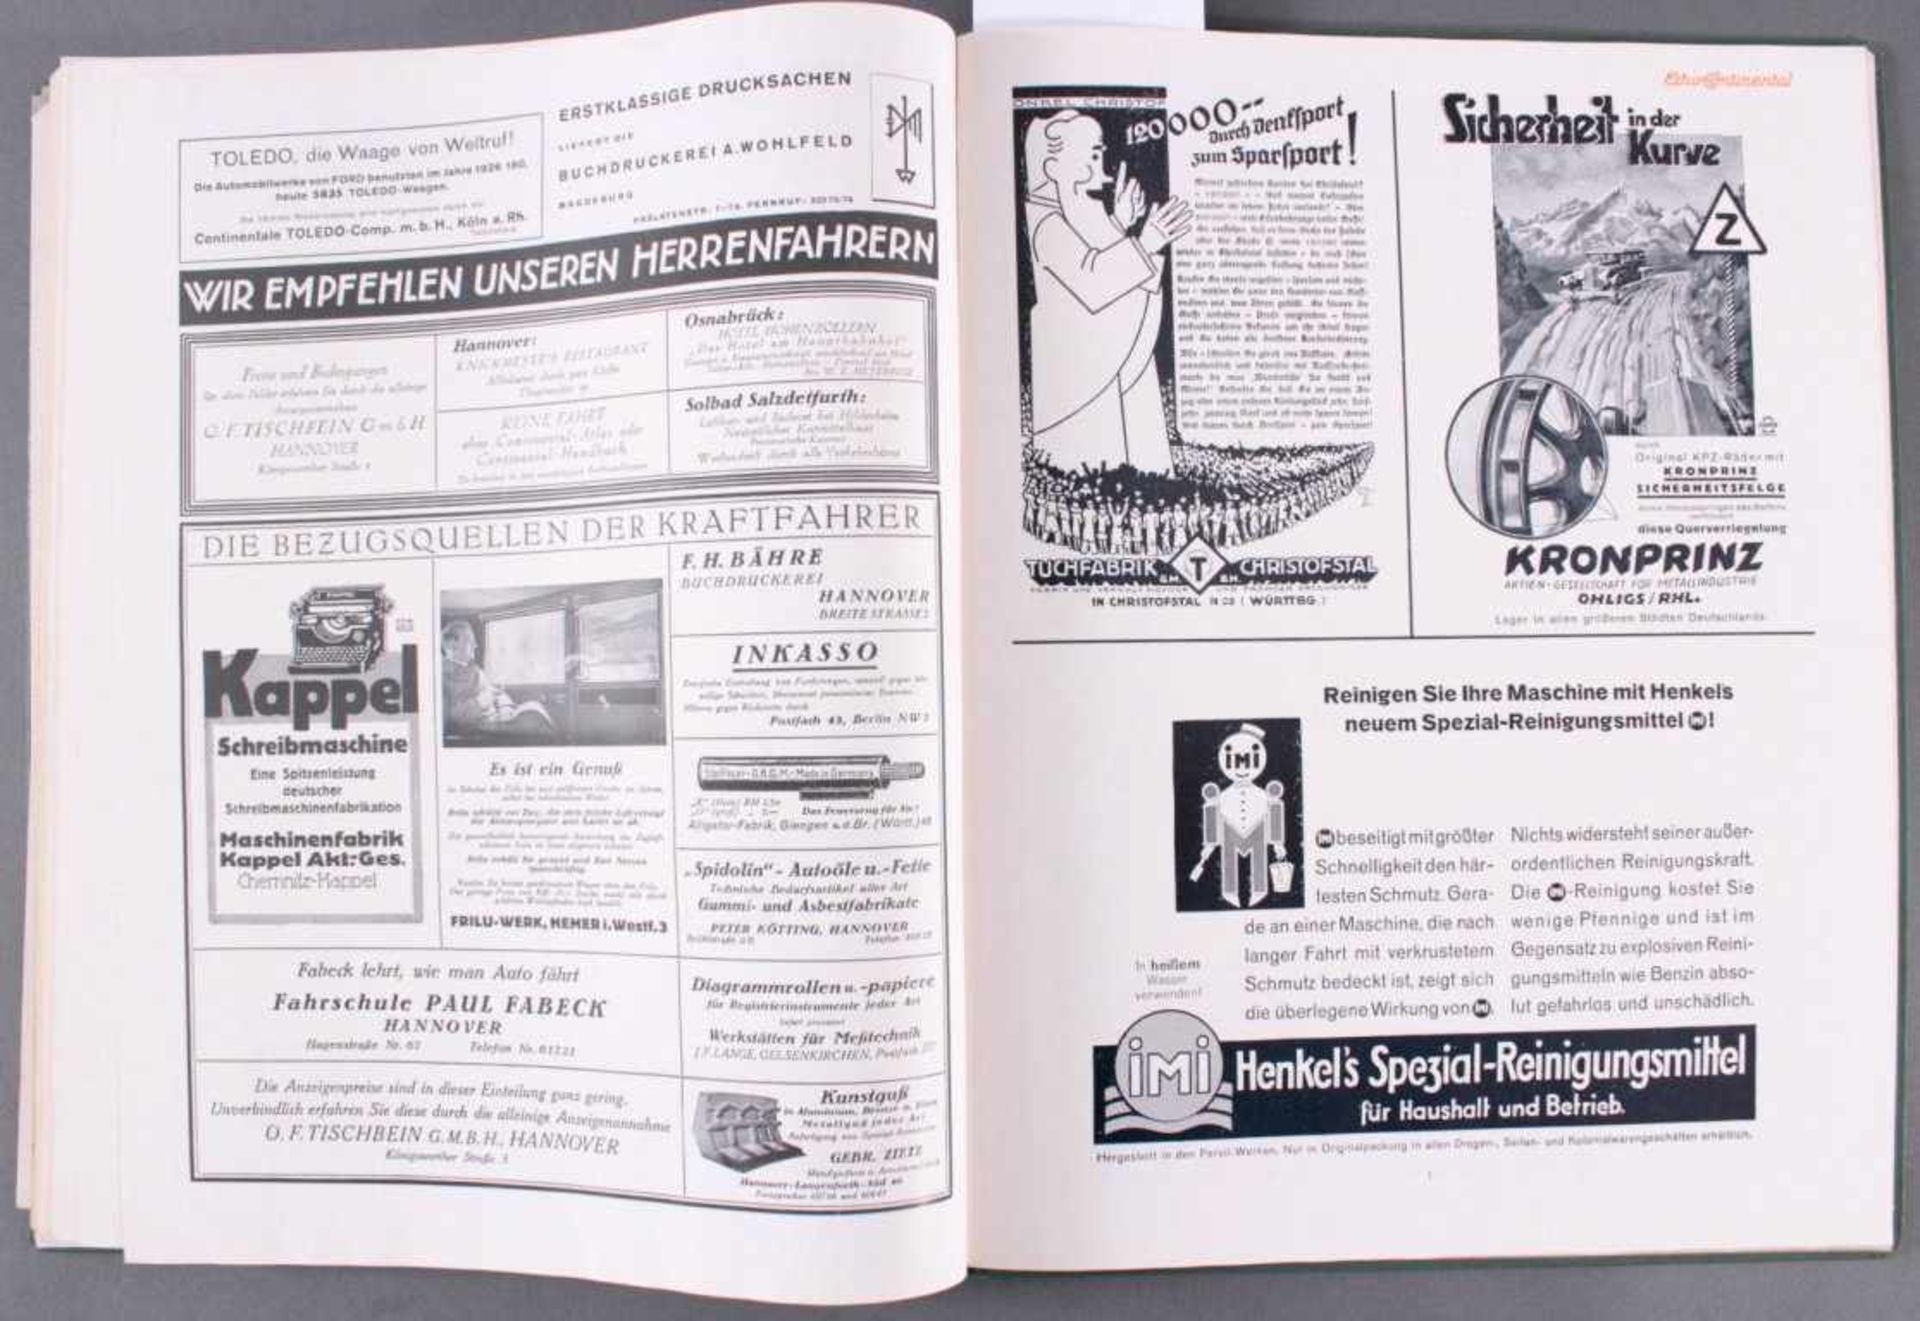 Echo Continental Jahrgang 1930Caoutschouc-Compagnie GmbH Hannover, Abbildungen und Textzum Thema - Image 5 of 6